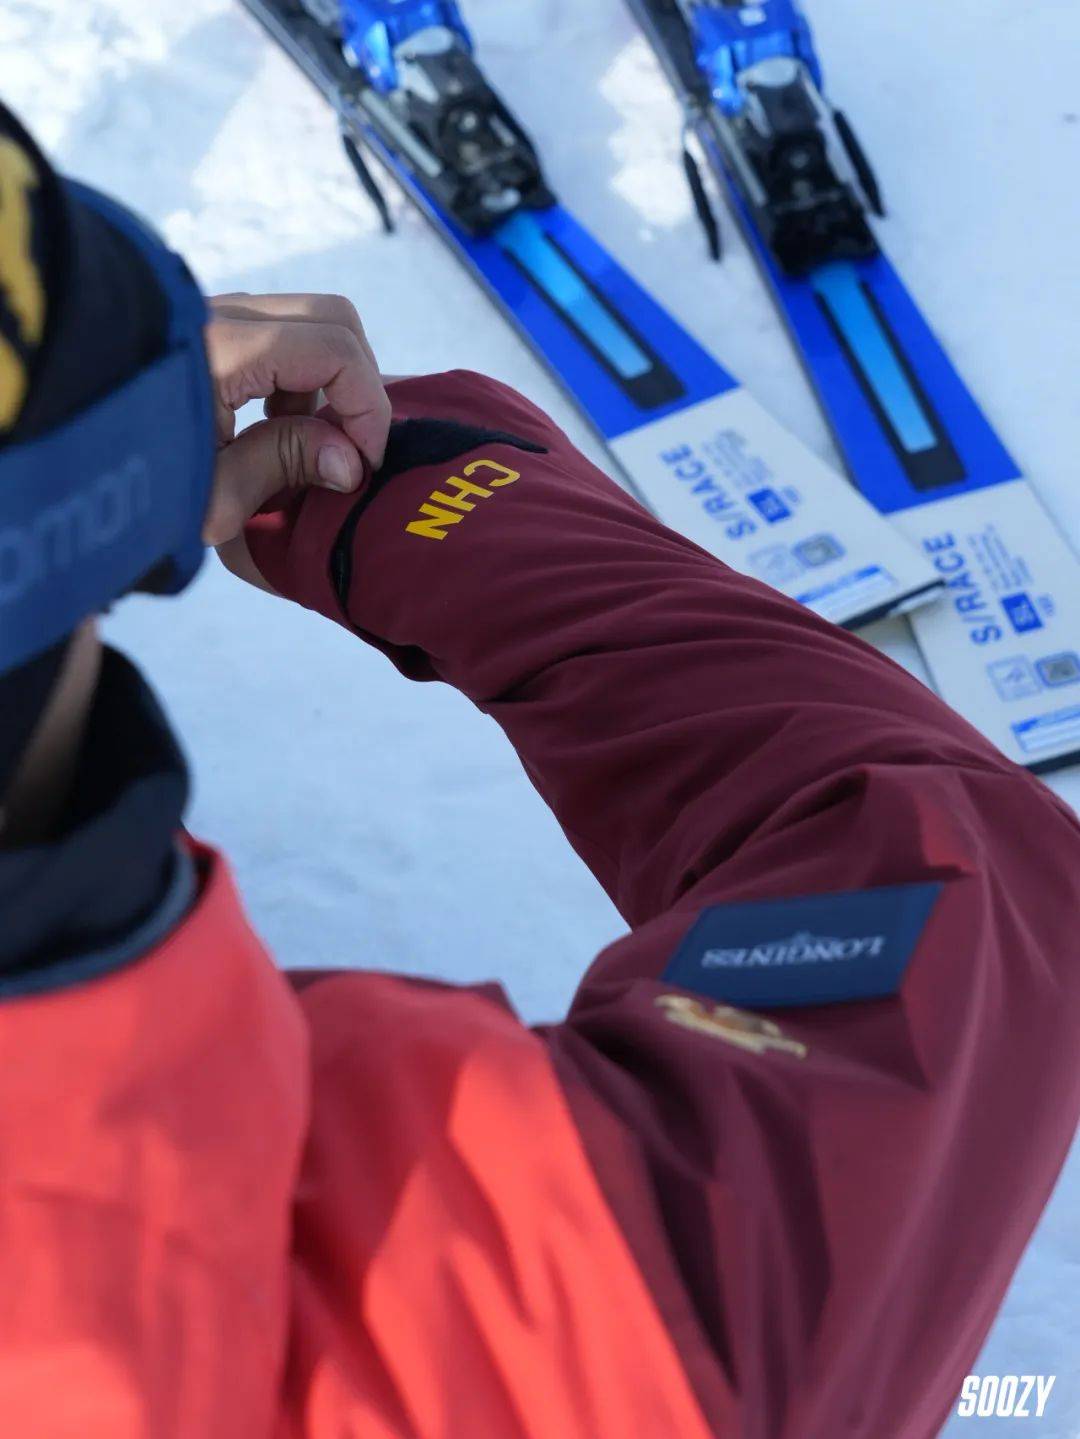 2022冬奥会中国滑雪服图片